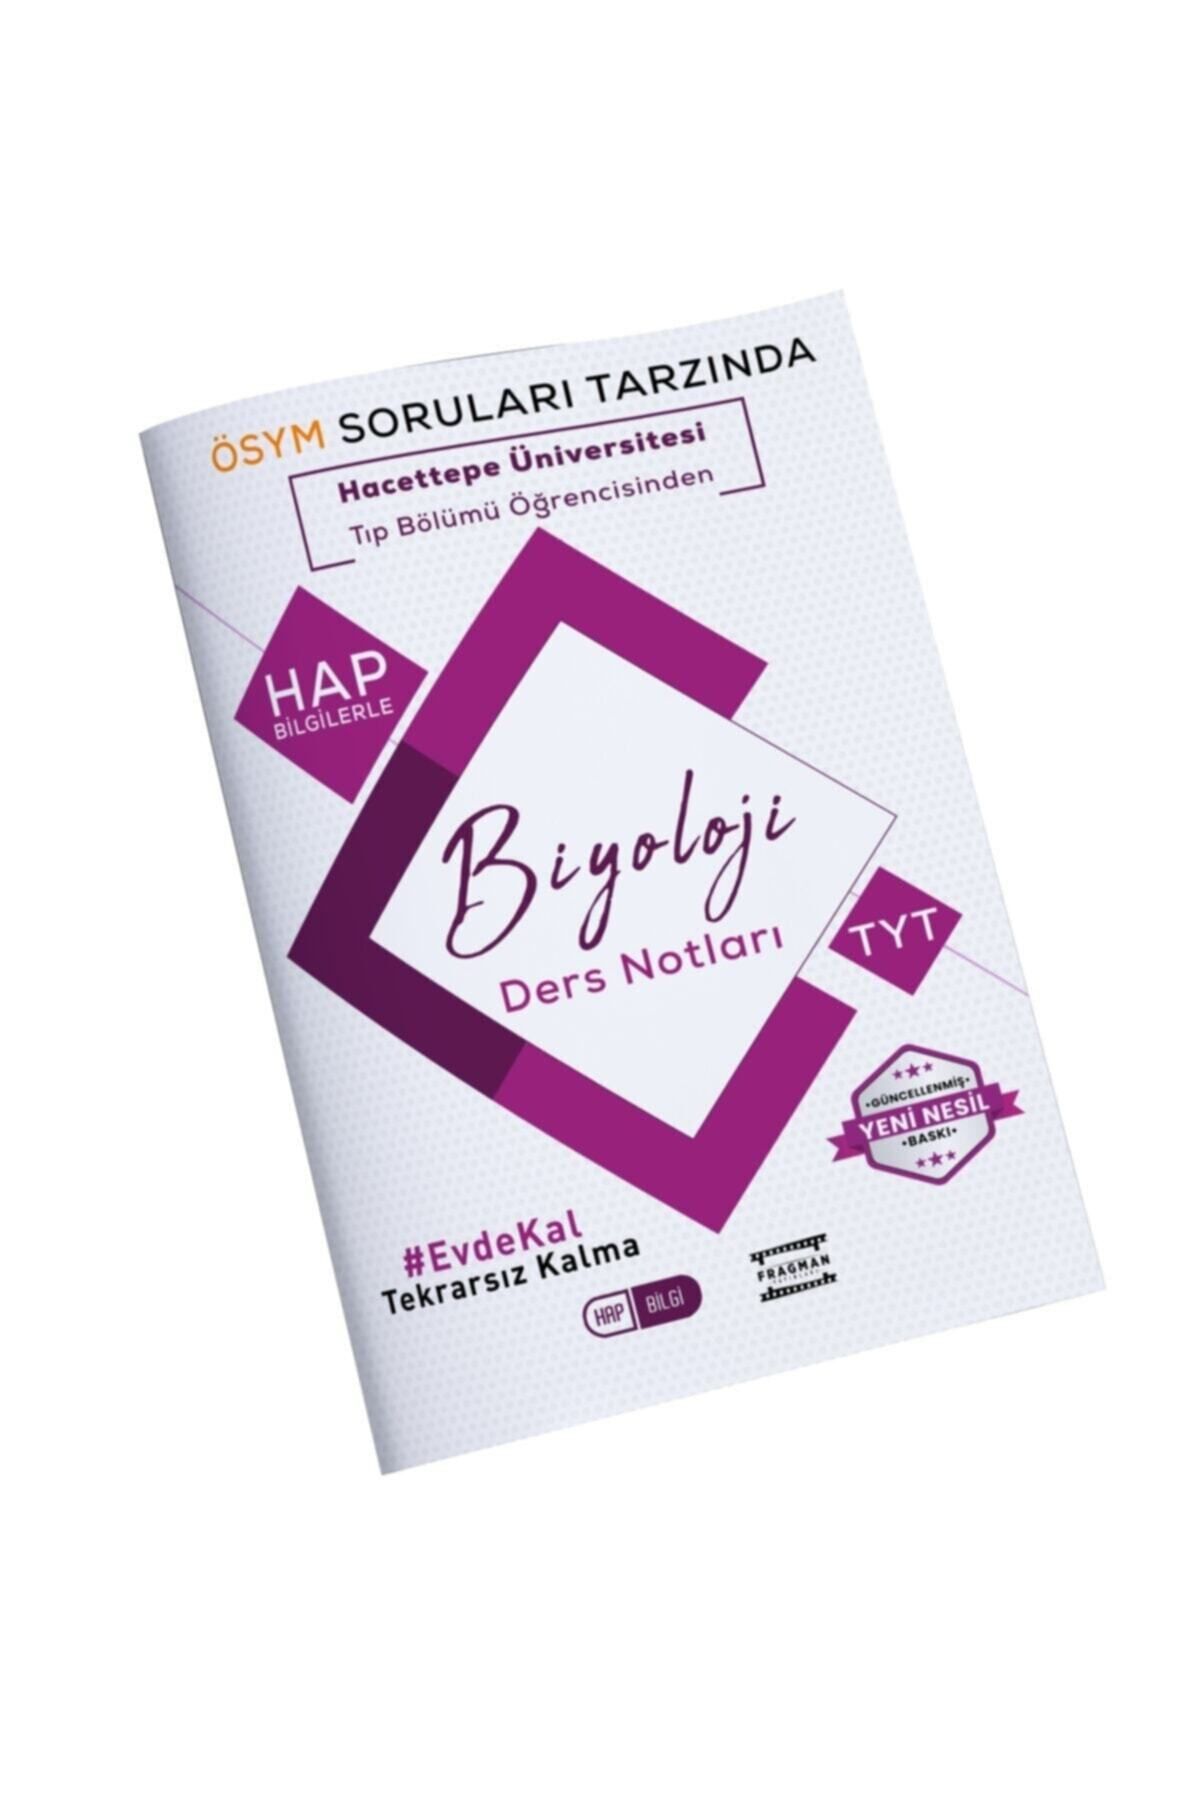 Fragman Yayınları Hacettepe Üniversitesi Öğrencisinden Tyt Biyoloji Hap Bilgi Ders Notları